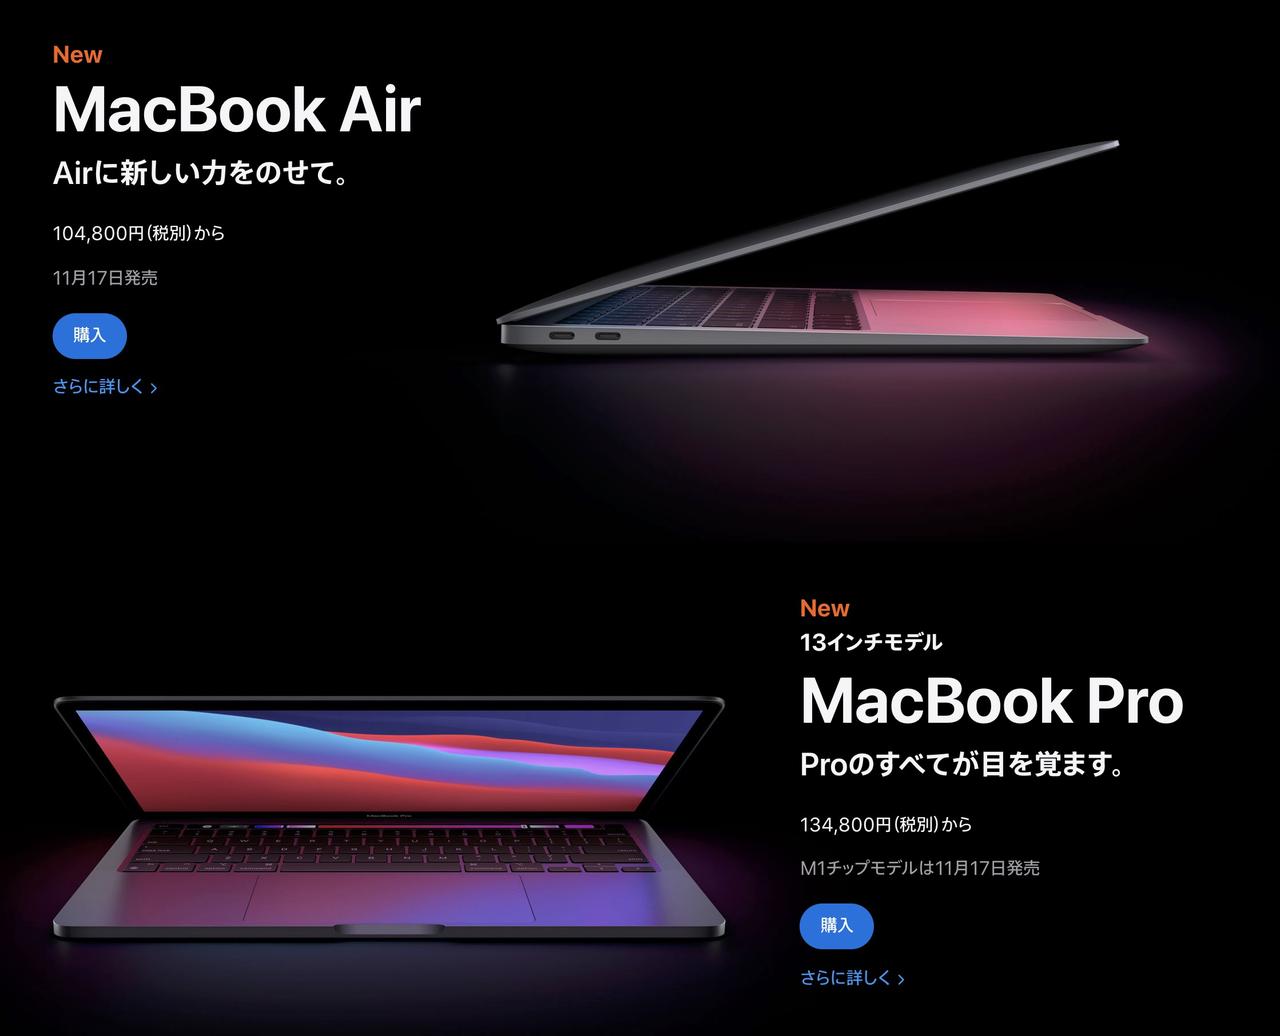 さあどっちにする？ MacBook AirとMacBook Proの違いをチェック #AppleEvent